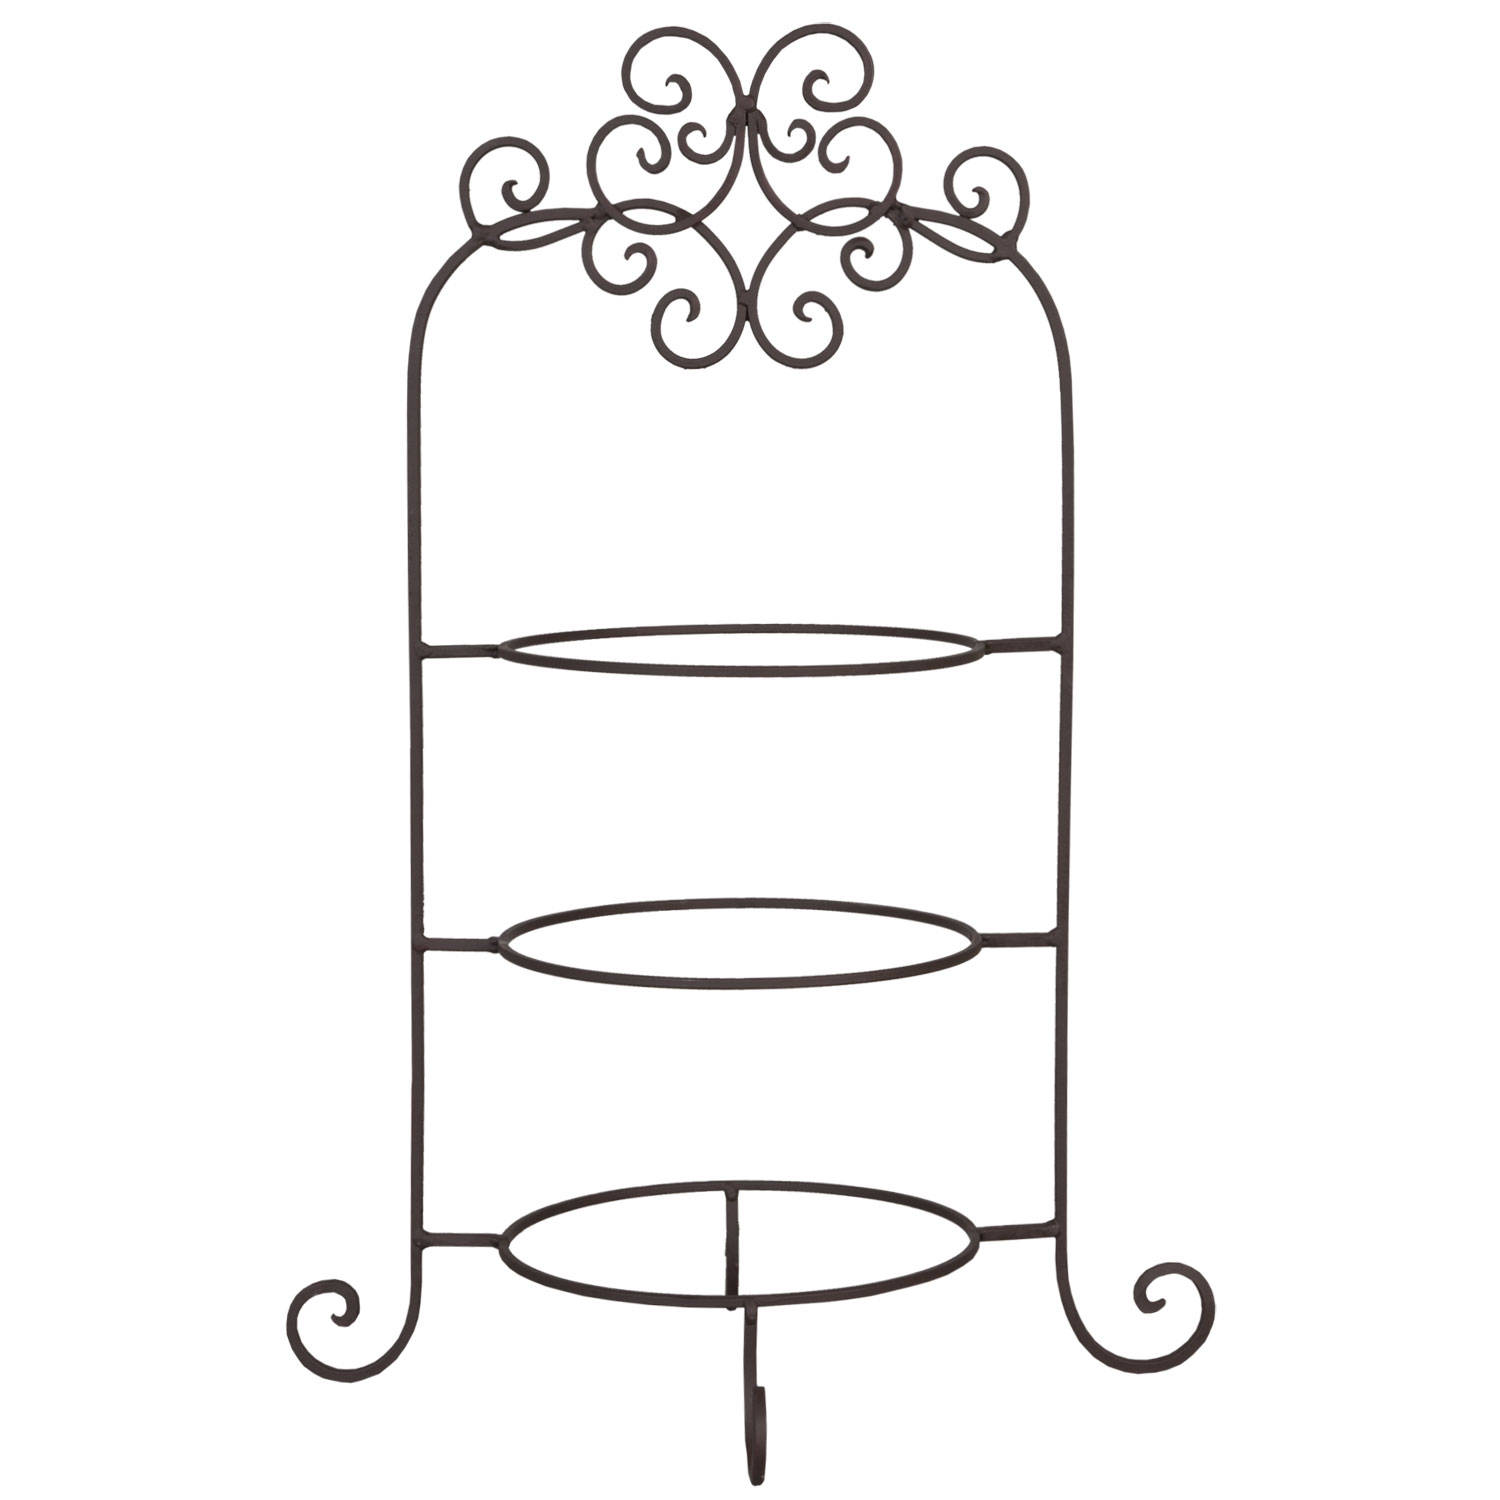 engel Observeer meditatie Clayre & eef etagère voor 3 borden 36x28x54 cm ( diameter ring 20cm ) -  bruin - ijzer | Blokker